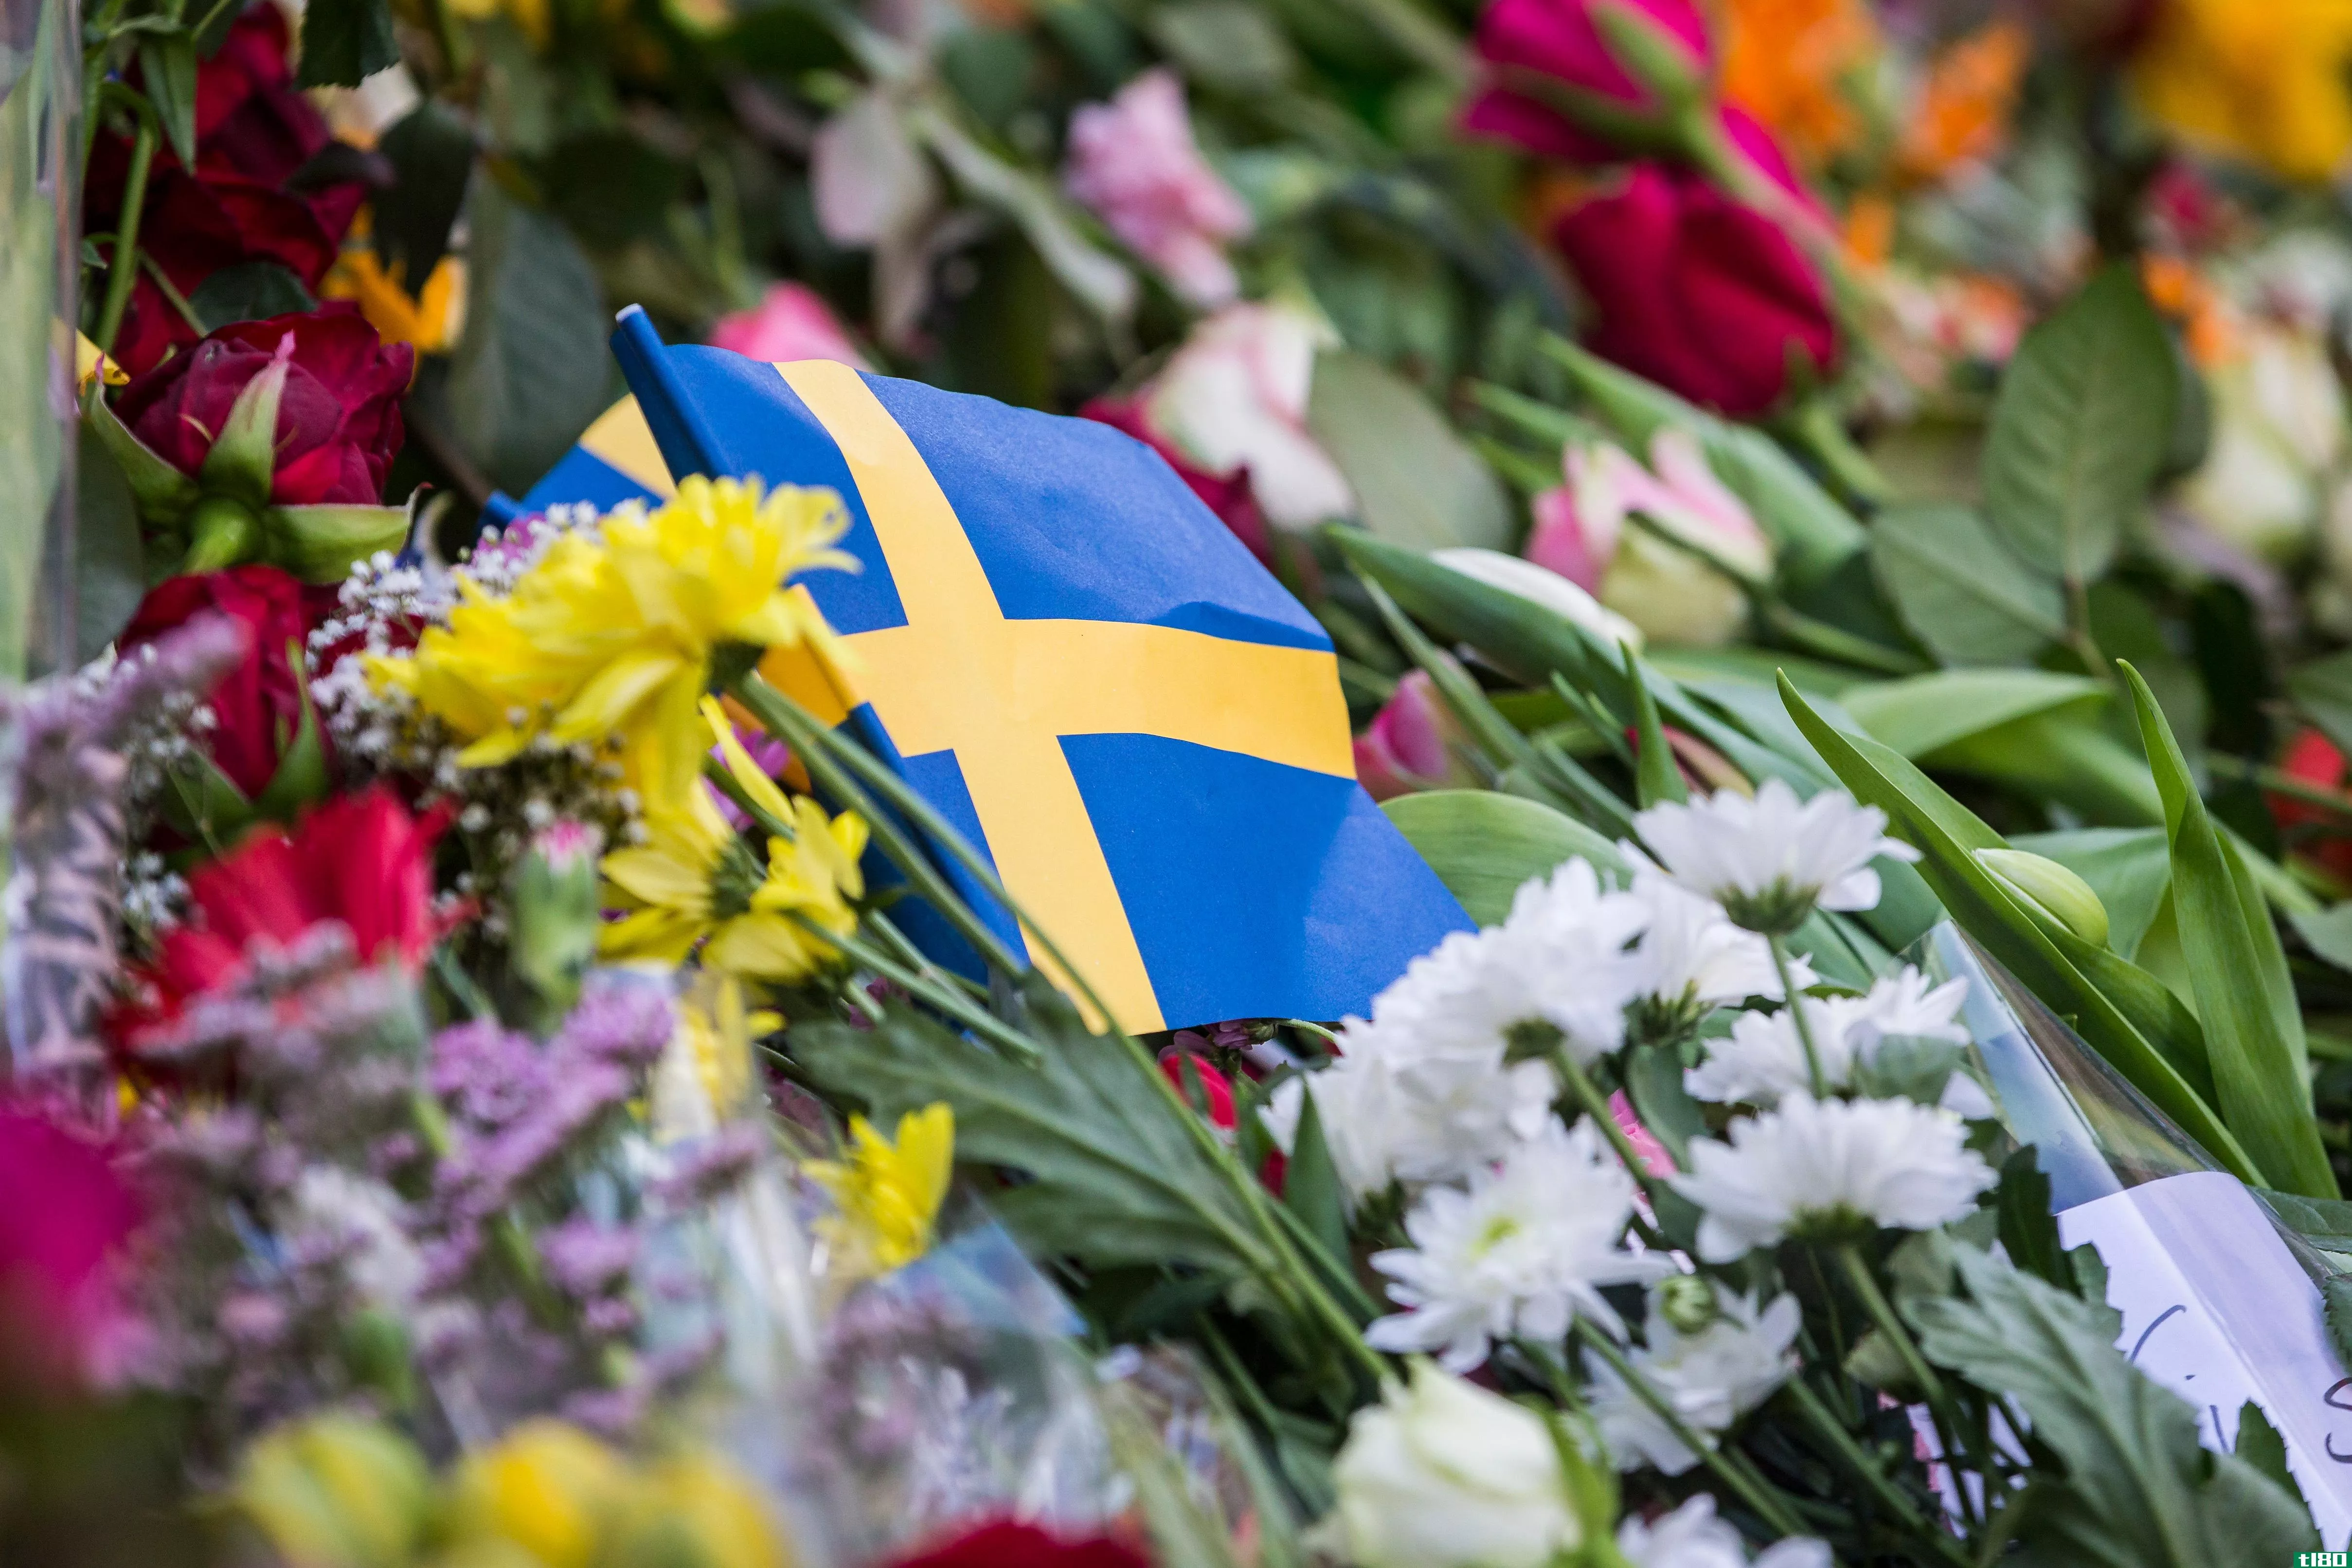 spotify高管在斯德哥尔摩卡车袭击事件中丧生